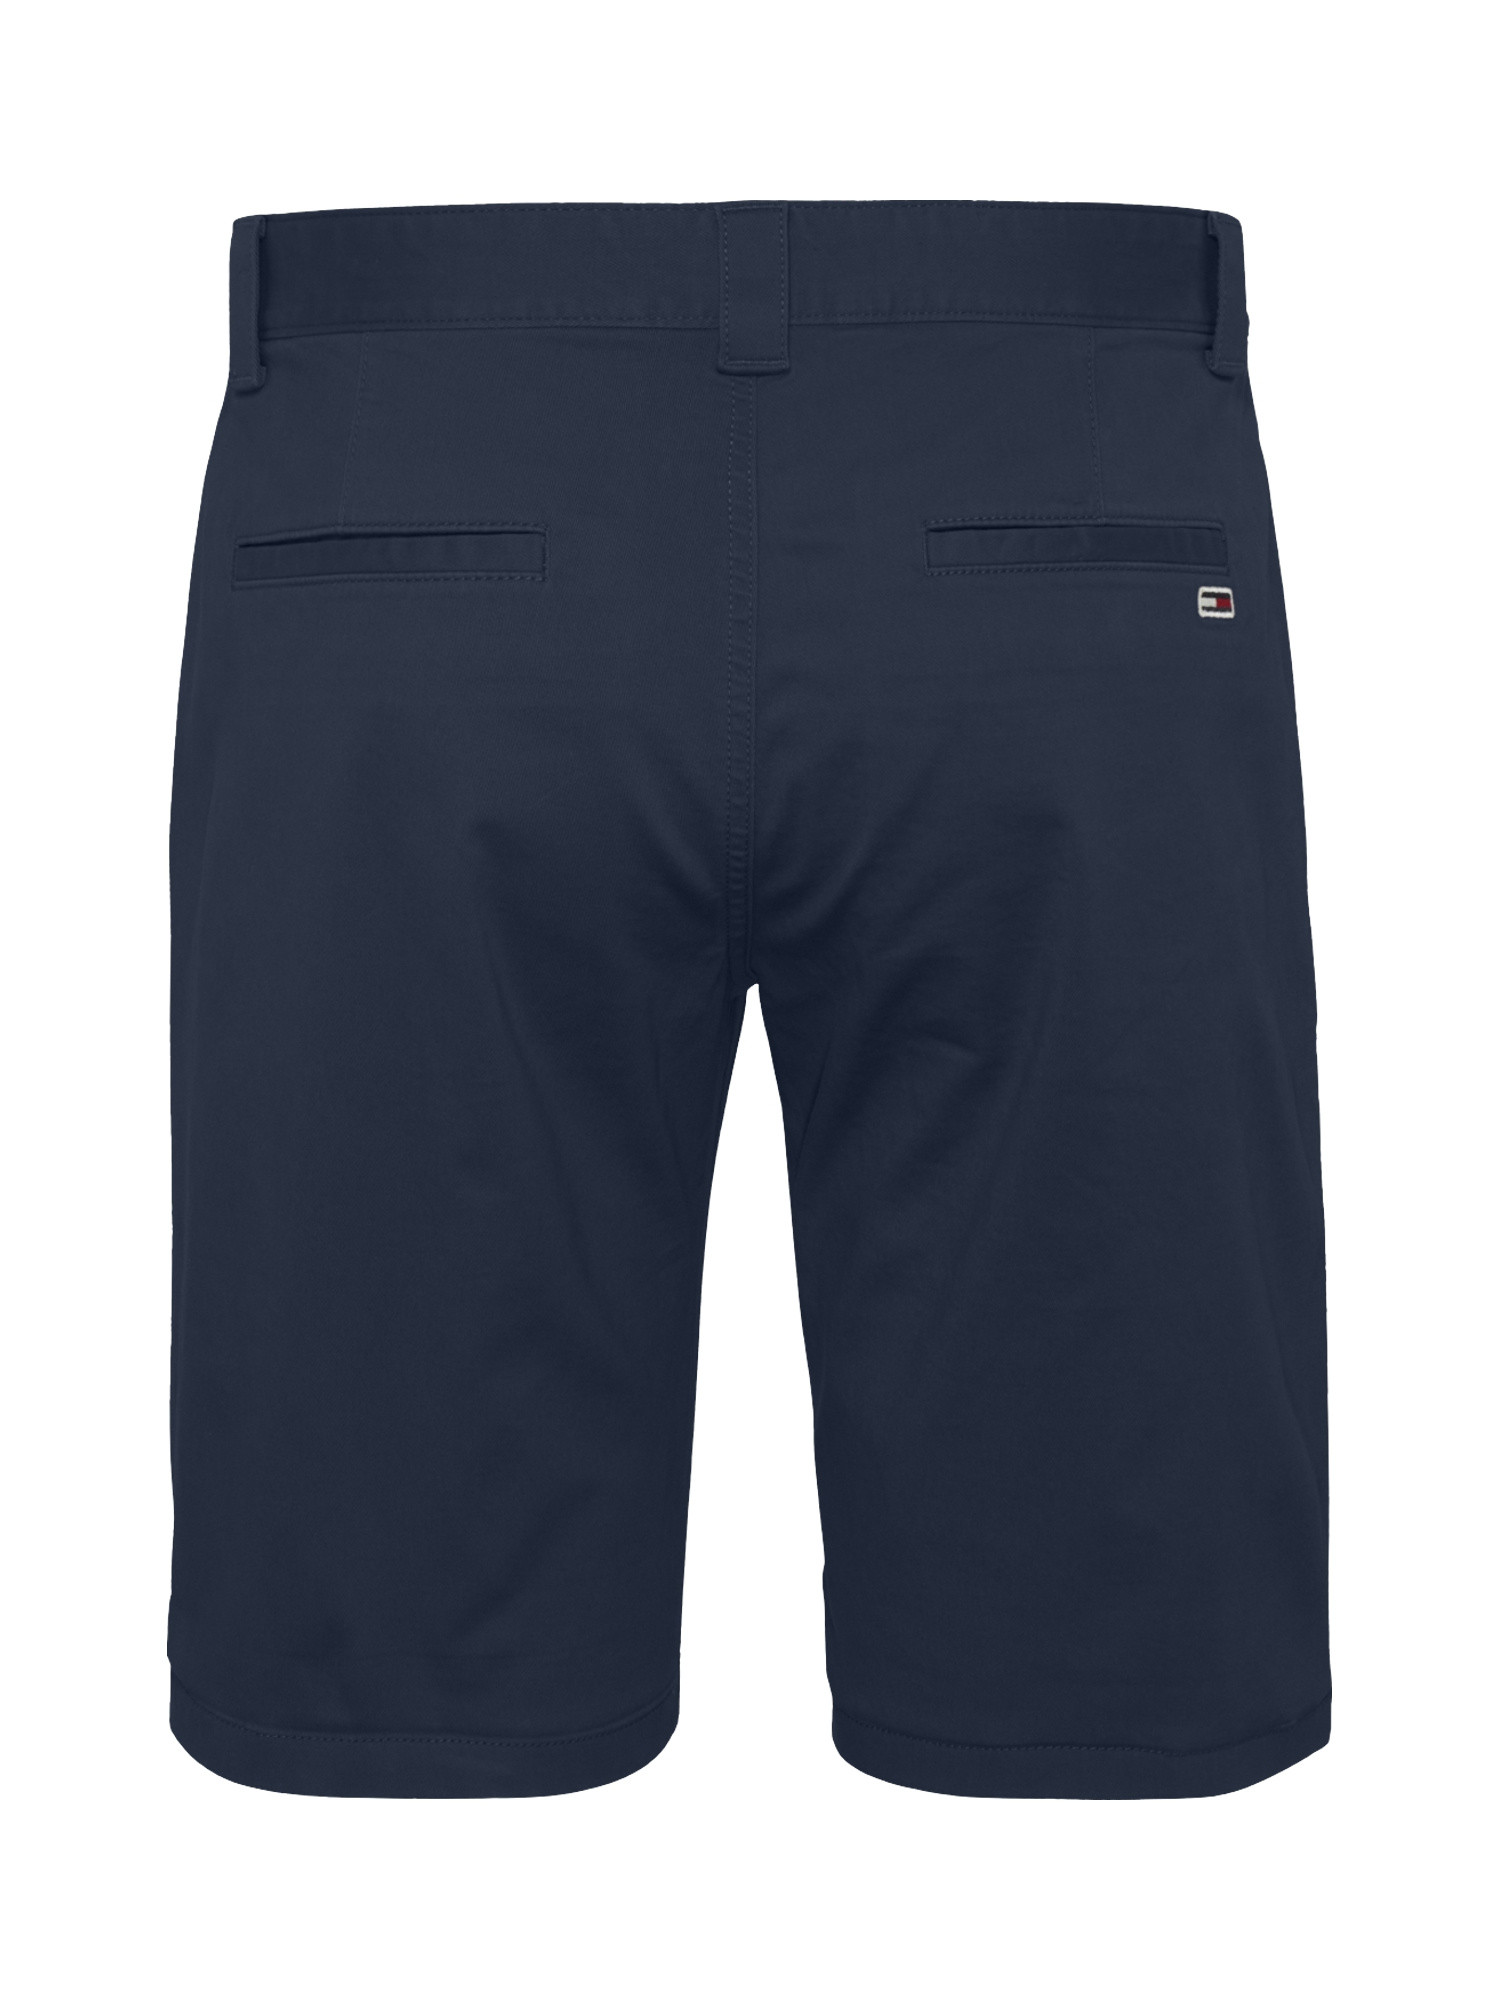 Chino shorts, Blu, large